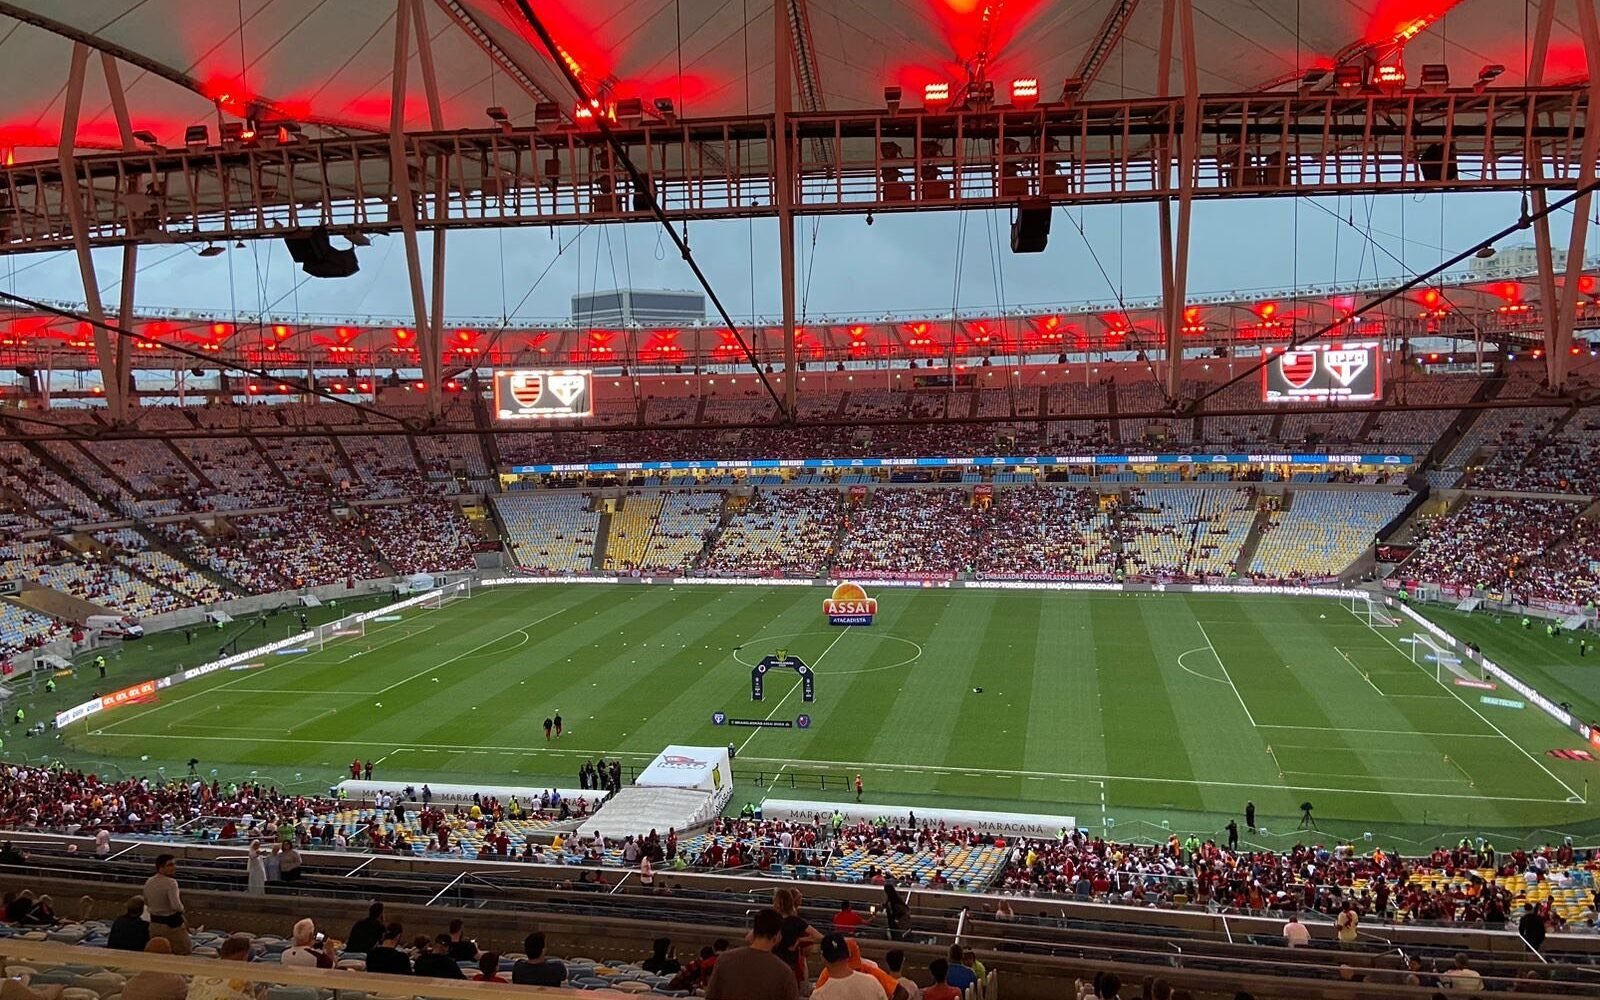 Flamengo divulga relacionados para jogo contra o Bragantino - Coluna do Fla